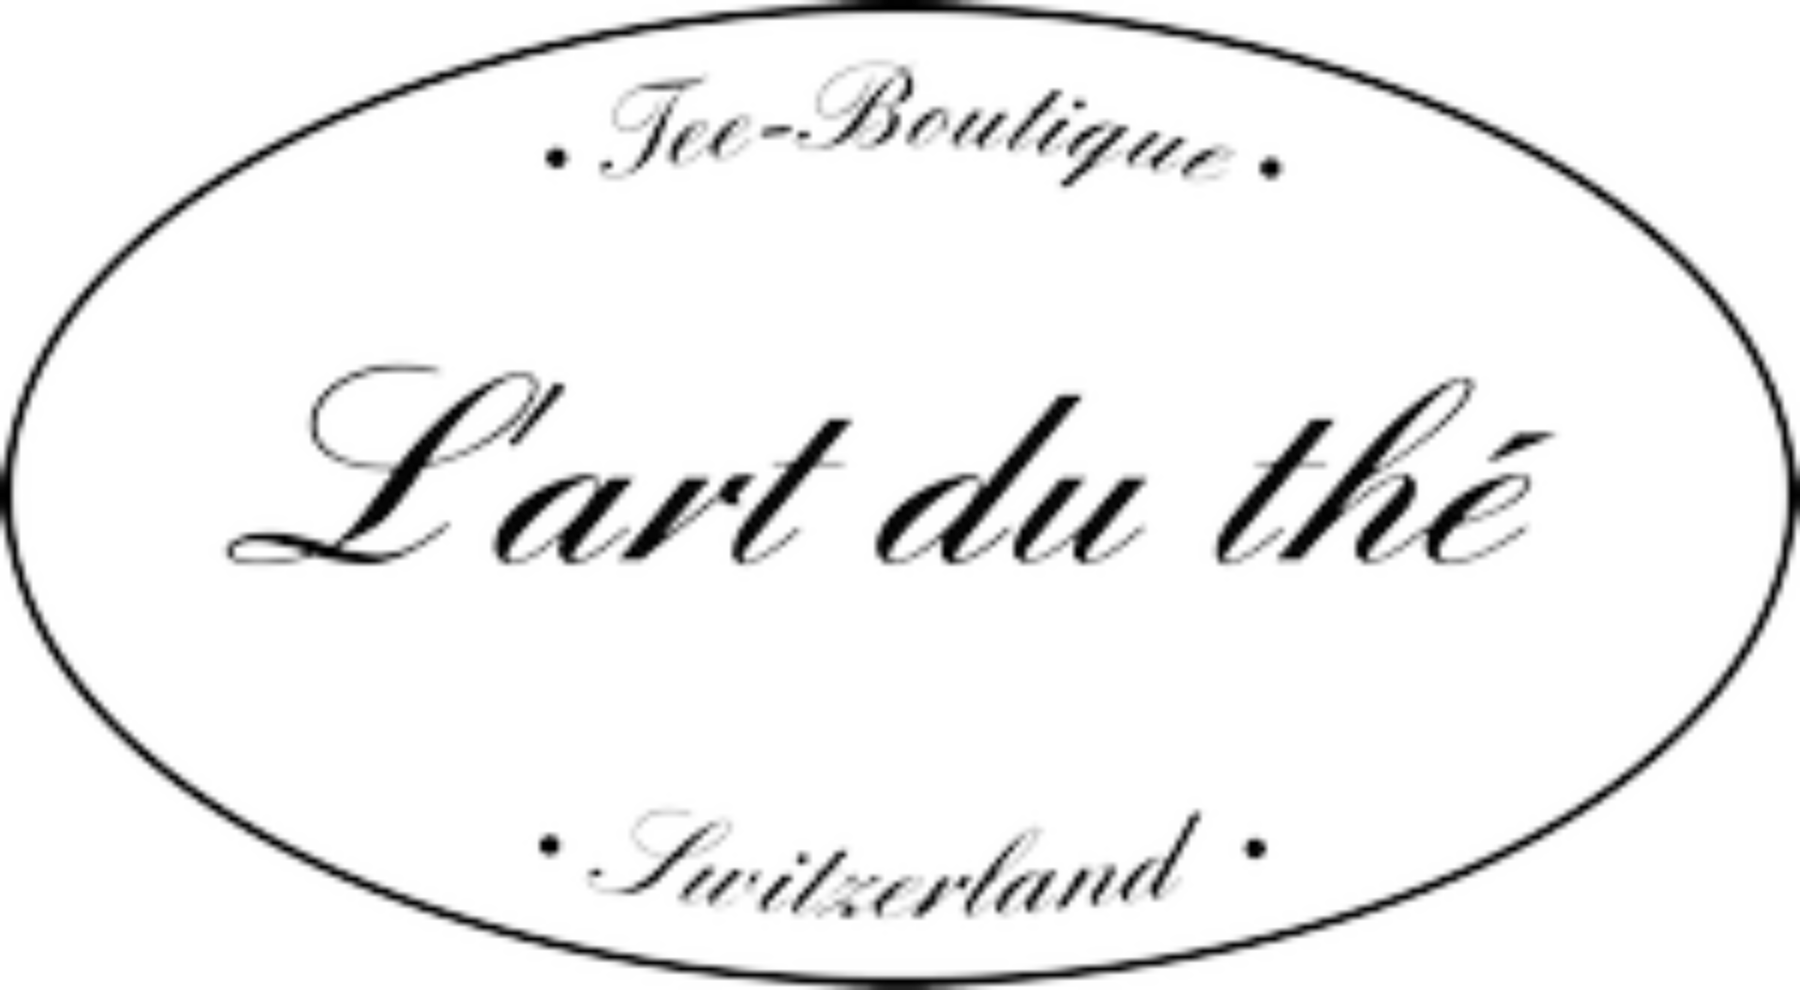 Lart du the logo